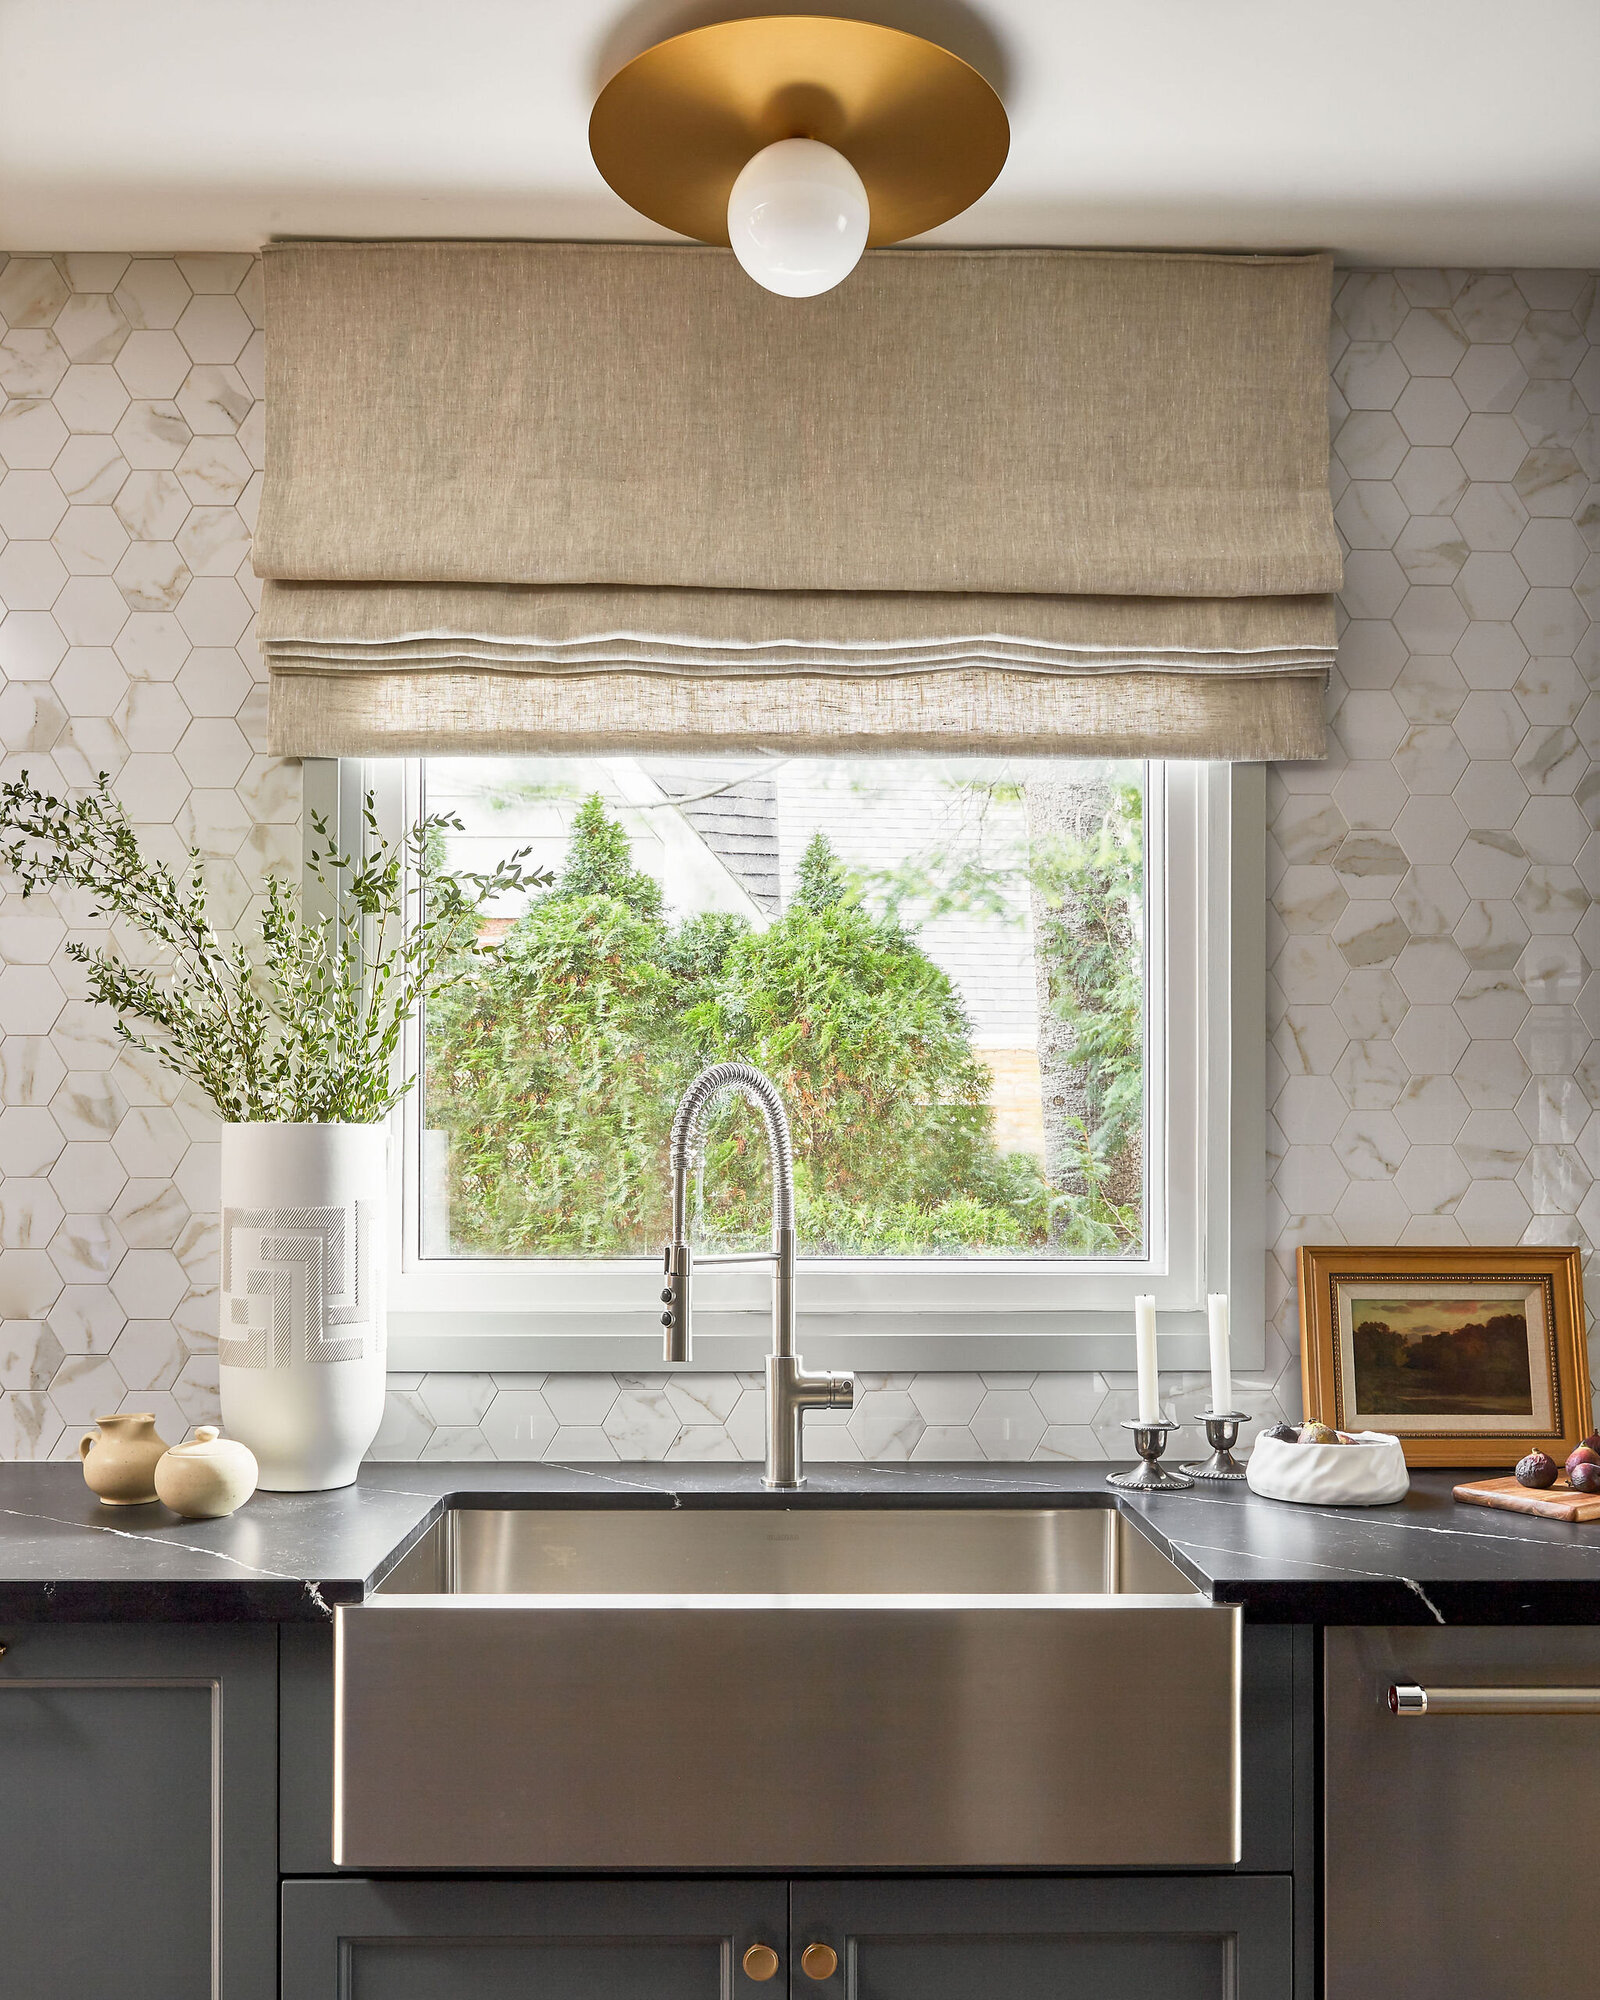 Bridgestone-lane-home-interior-design-melanie-hay-design-timeless-warm-inviting-kitchen-stainless-steel-sink-plant-art-closeup